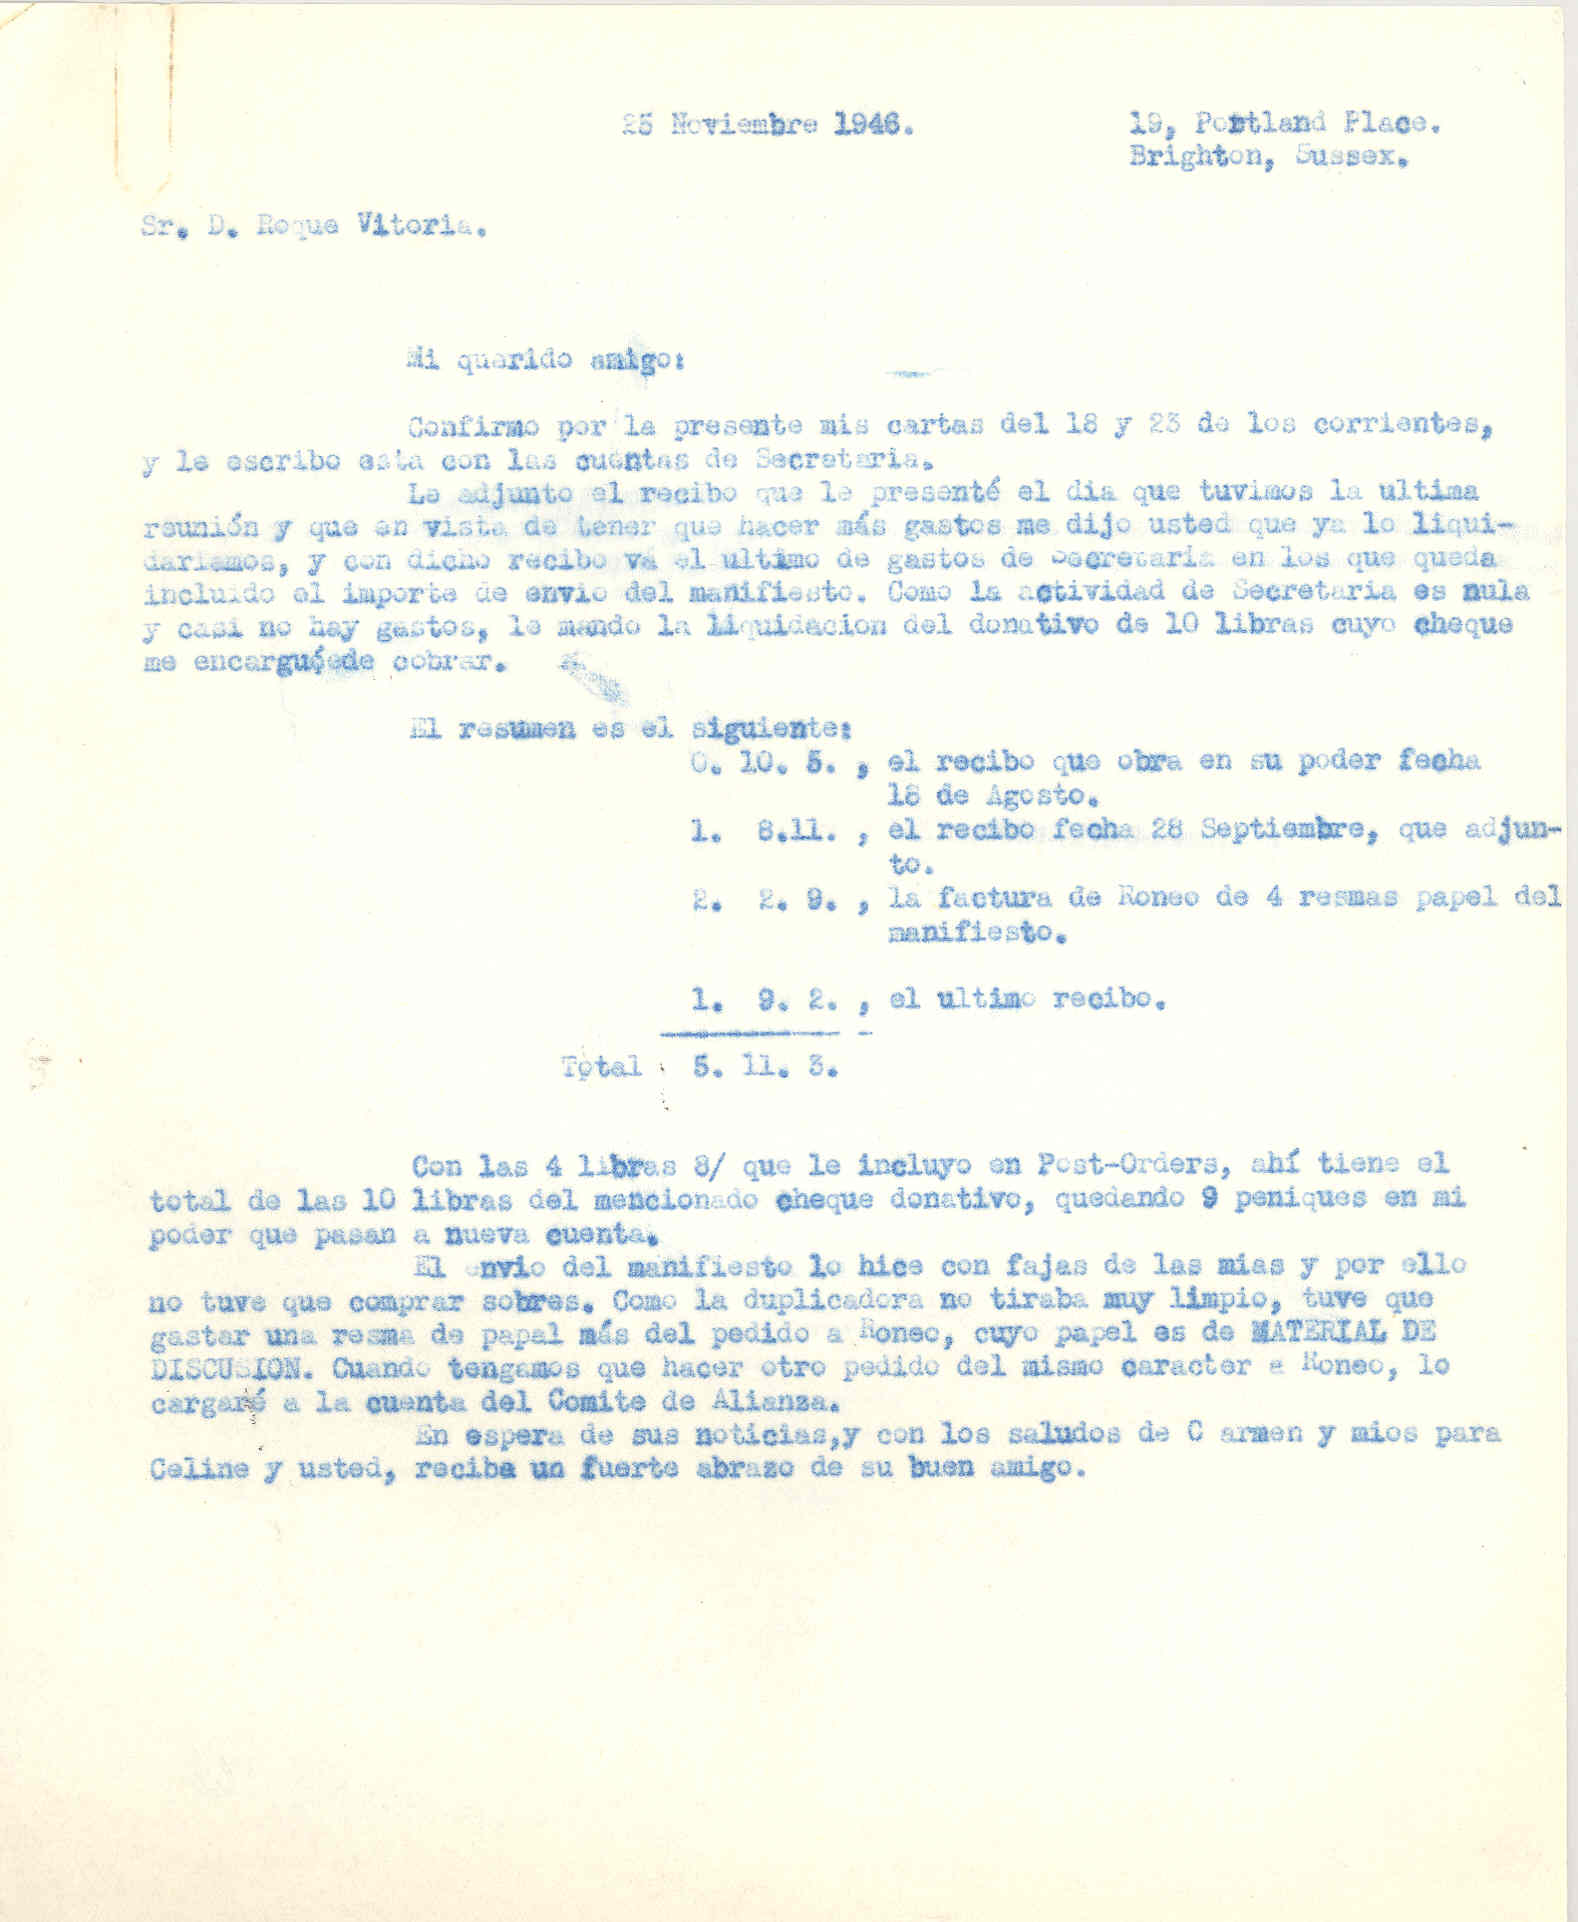 Carta a Roque Victoria, tesorero de la ANFD, en la que le refiere los gastos de la Secretaría de la ANFD.